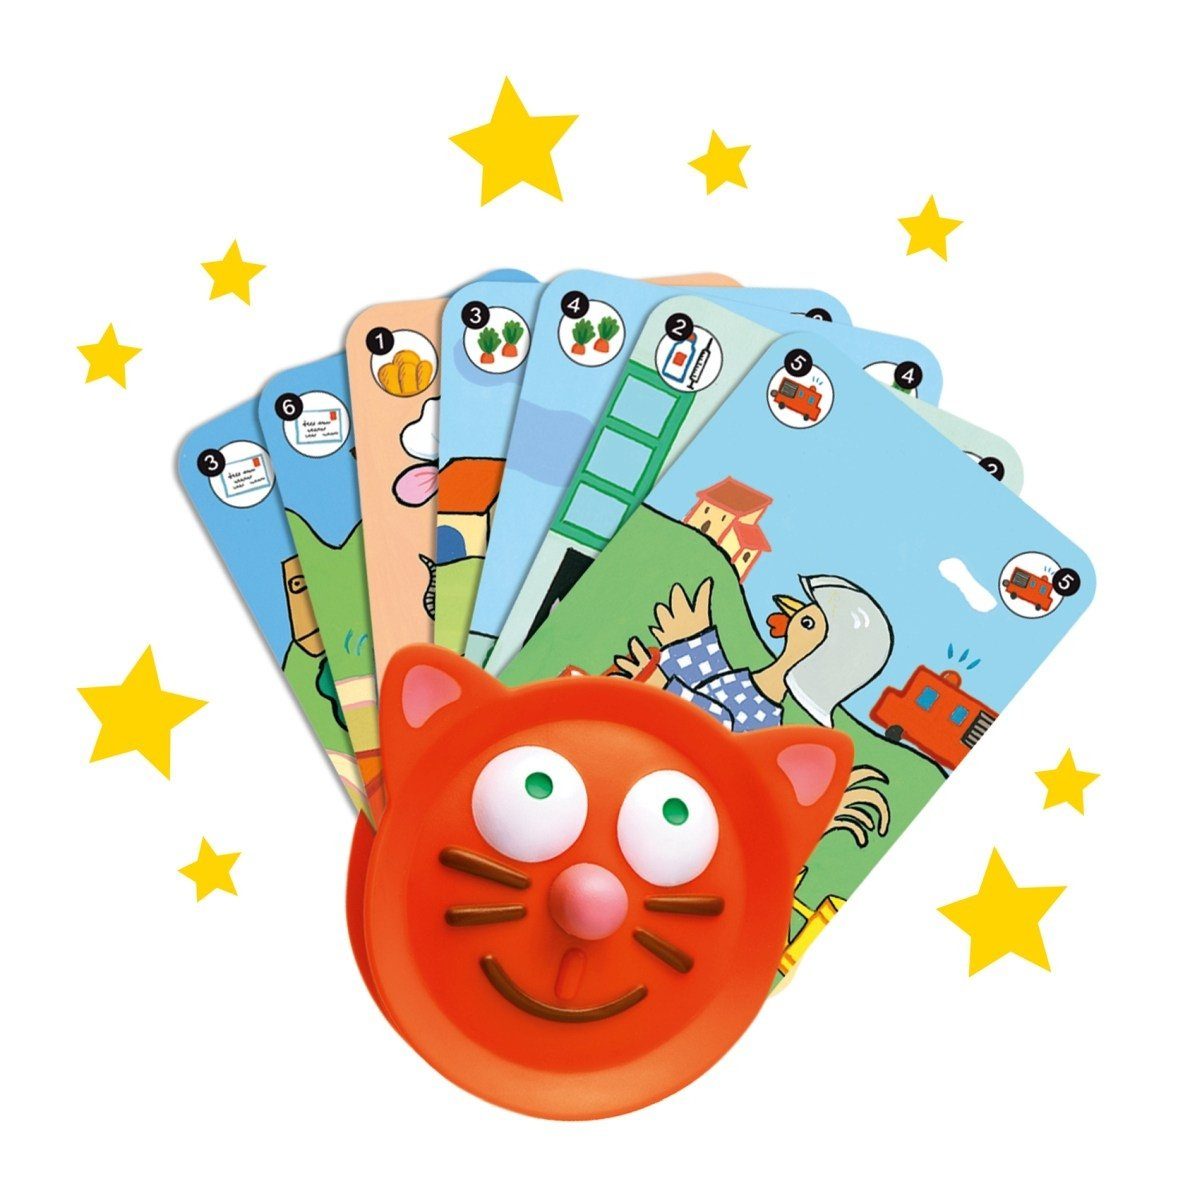 Kartenhalter Katzendesign DJECO Spiel, Spielkartenhalter Kinder